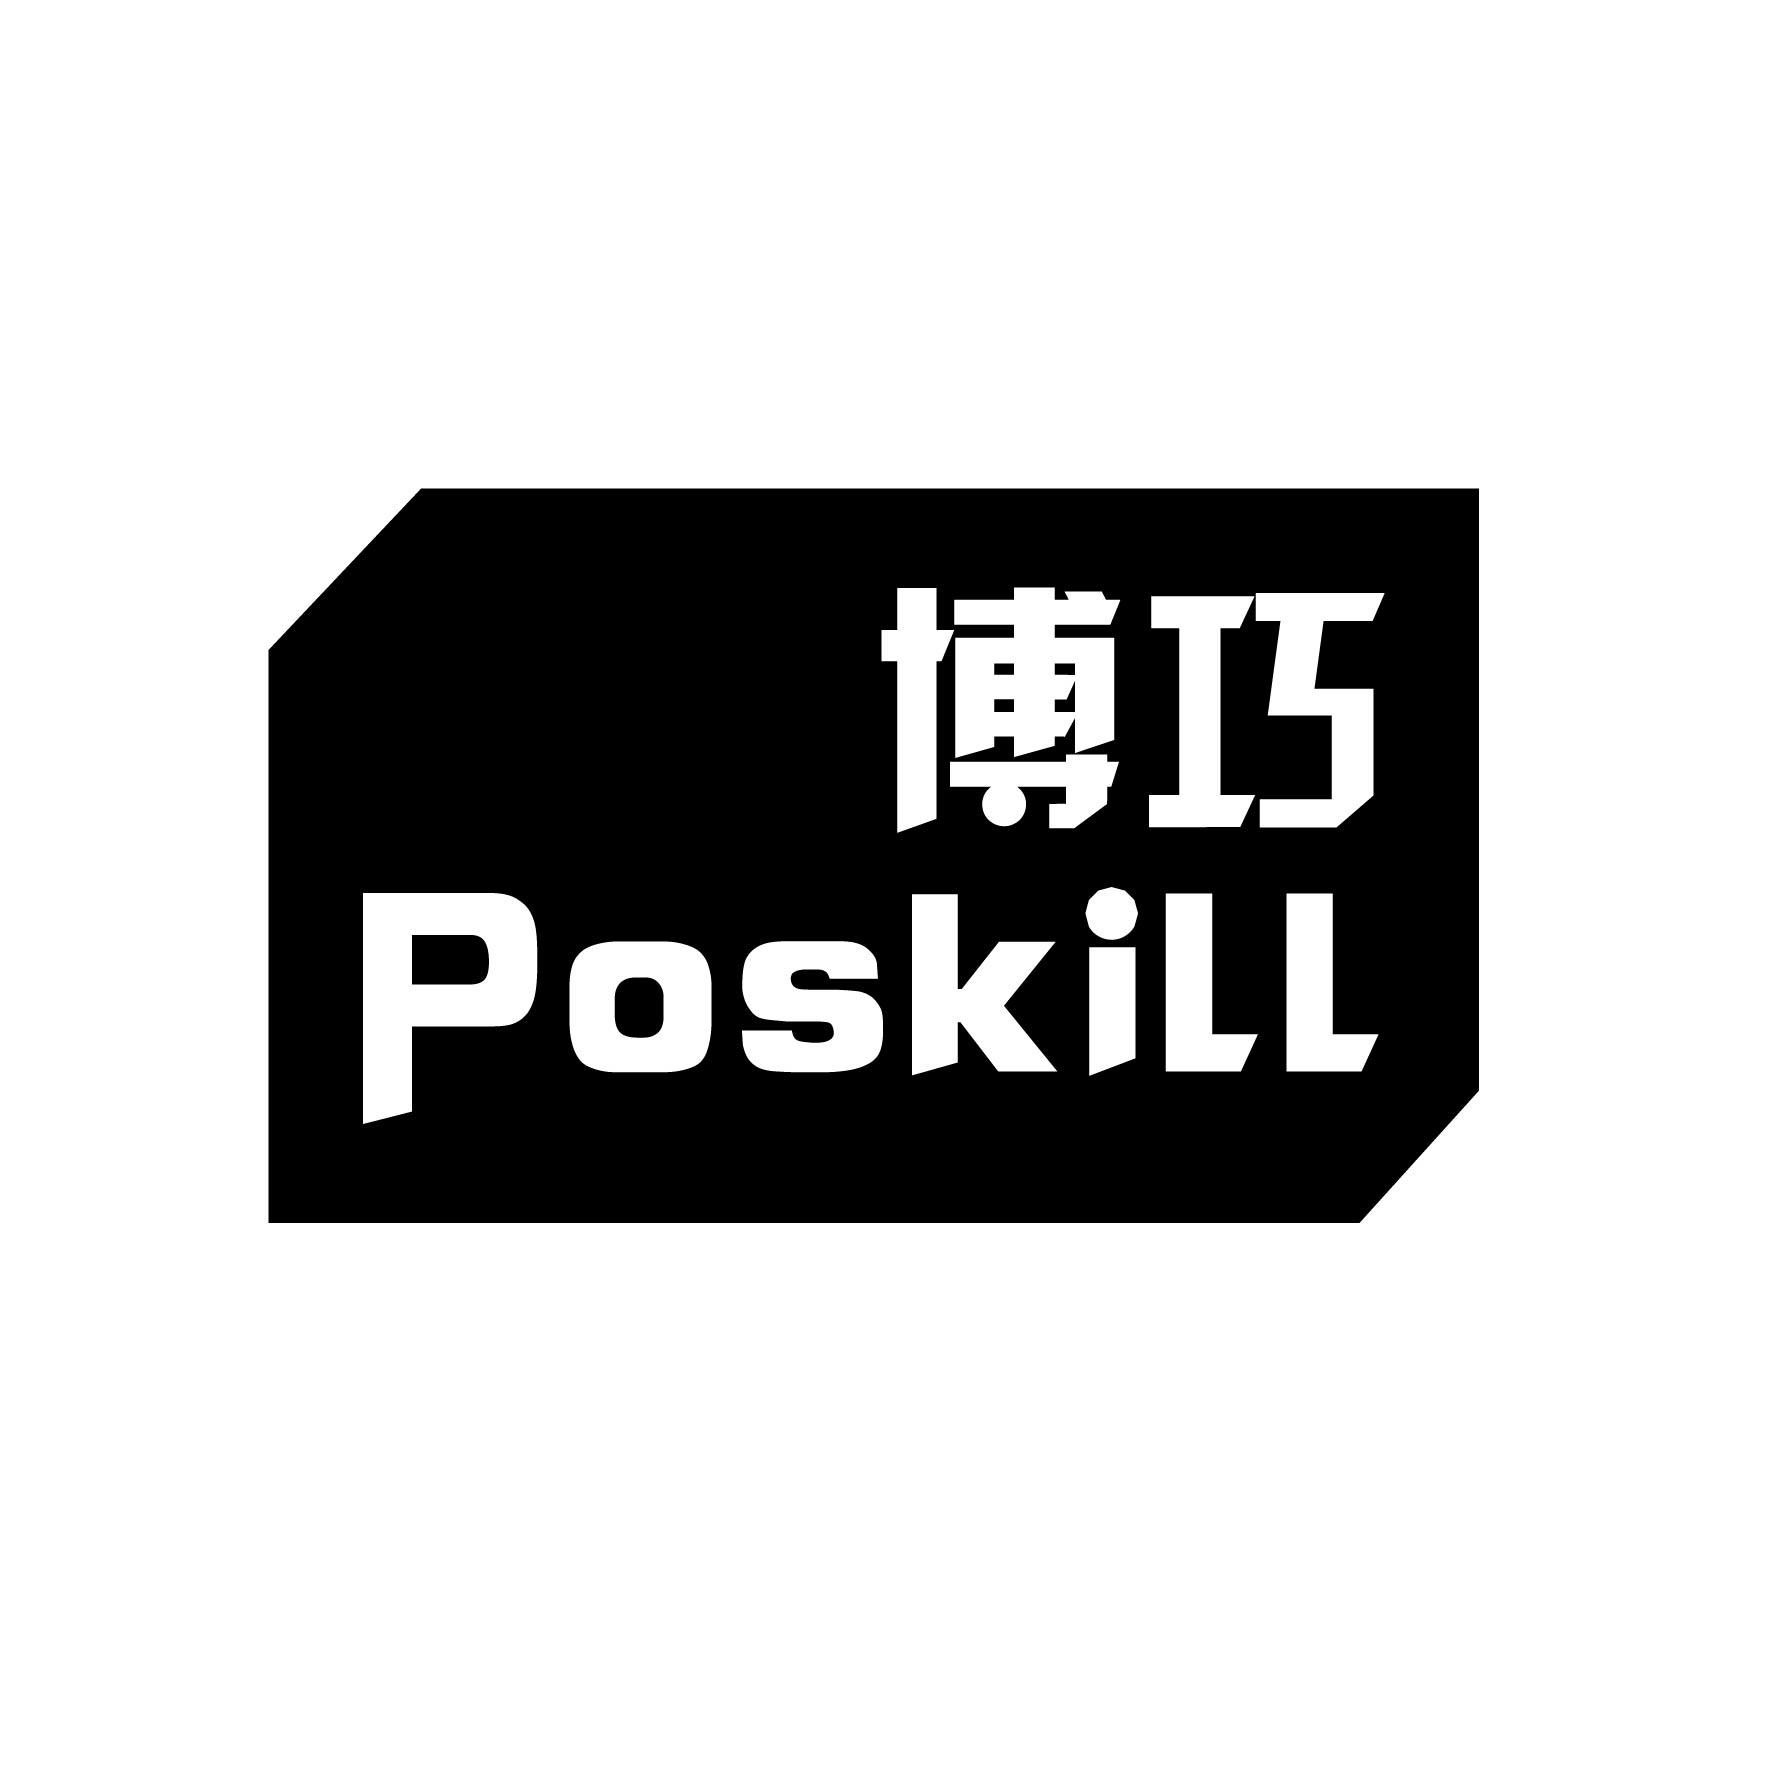  POSKILL